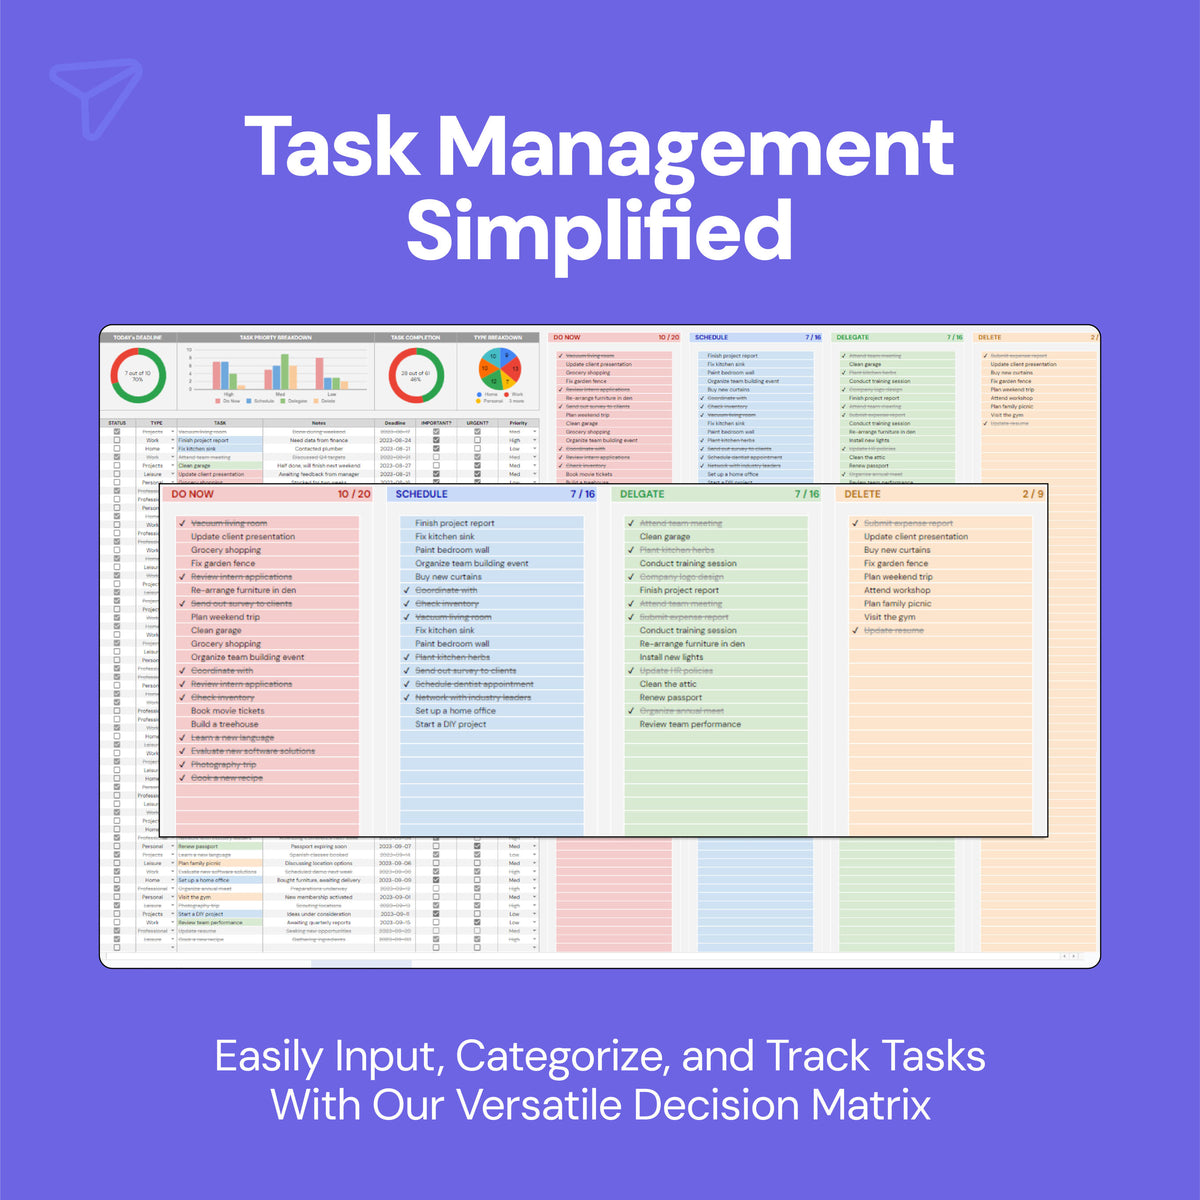 Task Priority Tracker